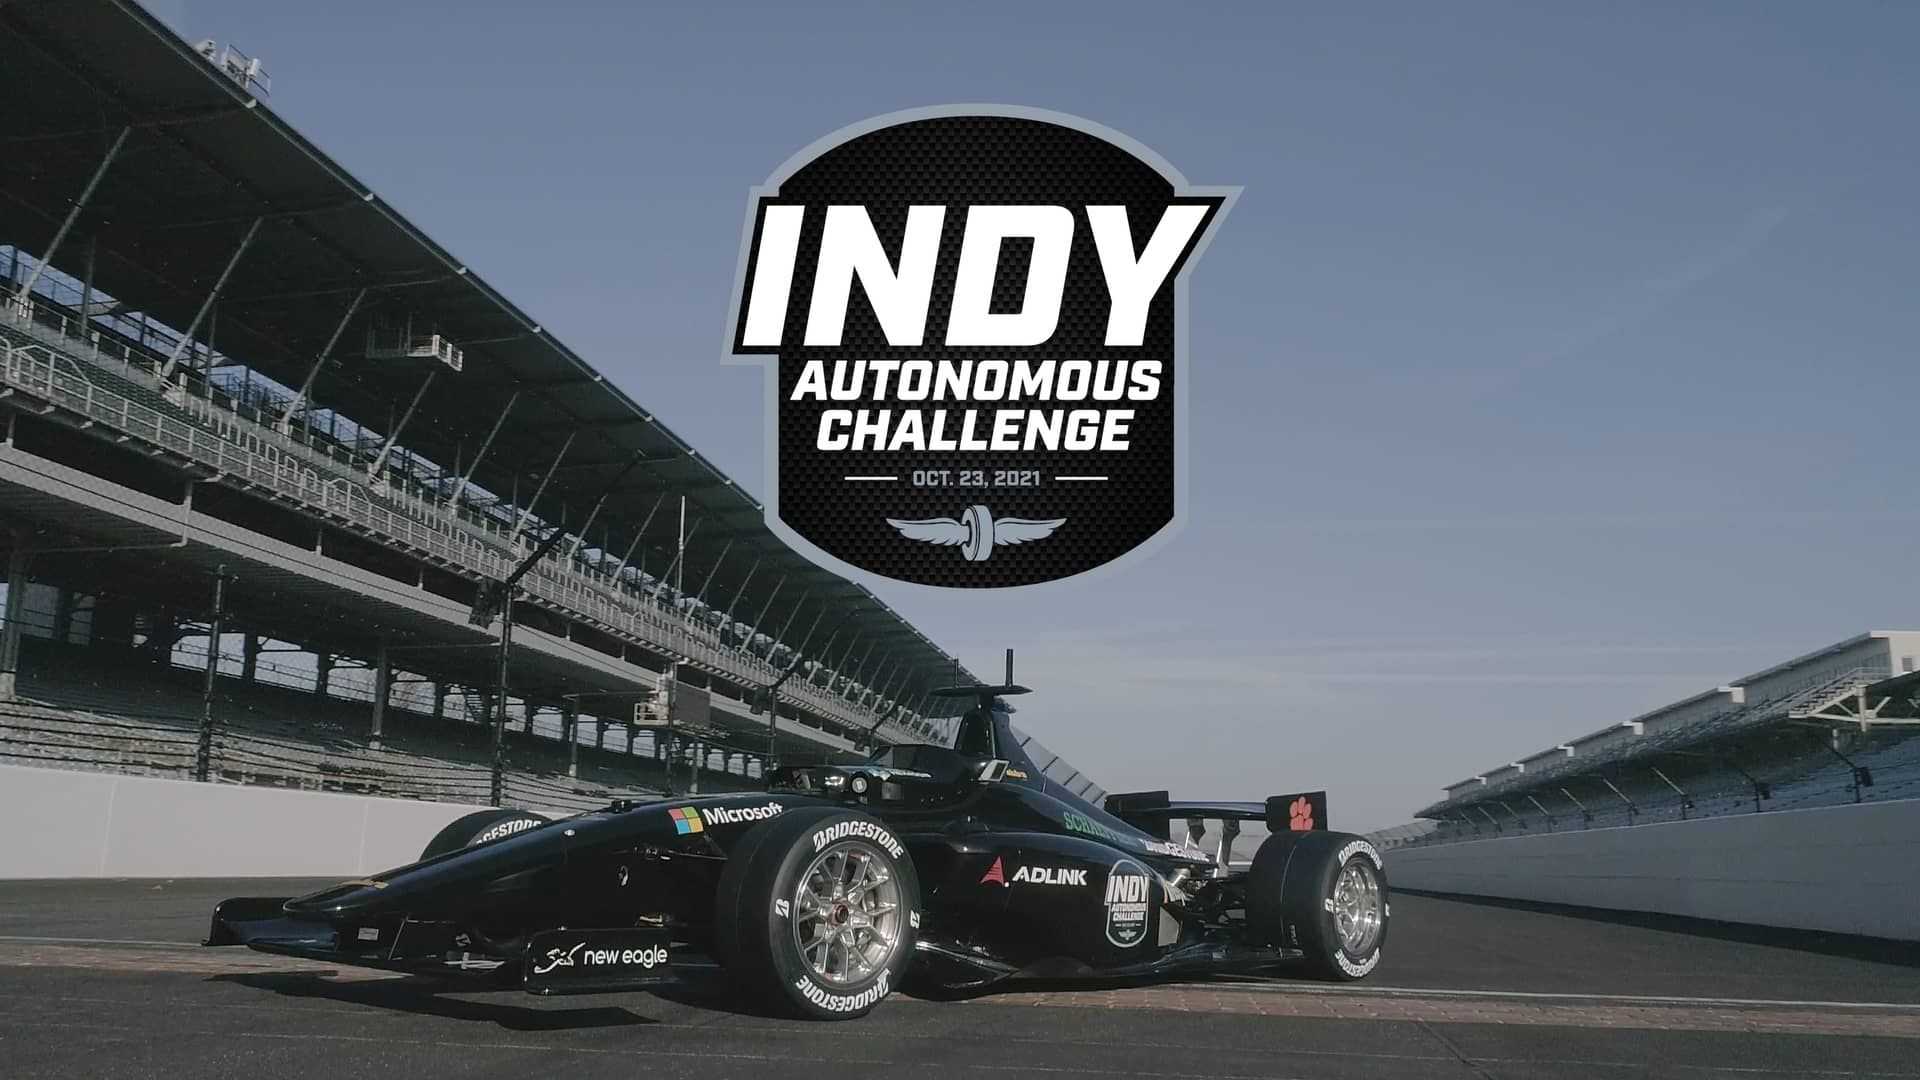 نمای جلو خودرو خودران ایندی کار / IndyCar Autonomous Series در پیست ایندیاناپولیس 